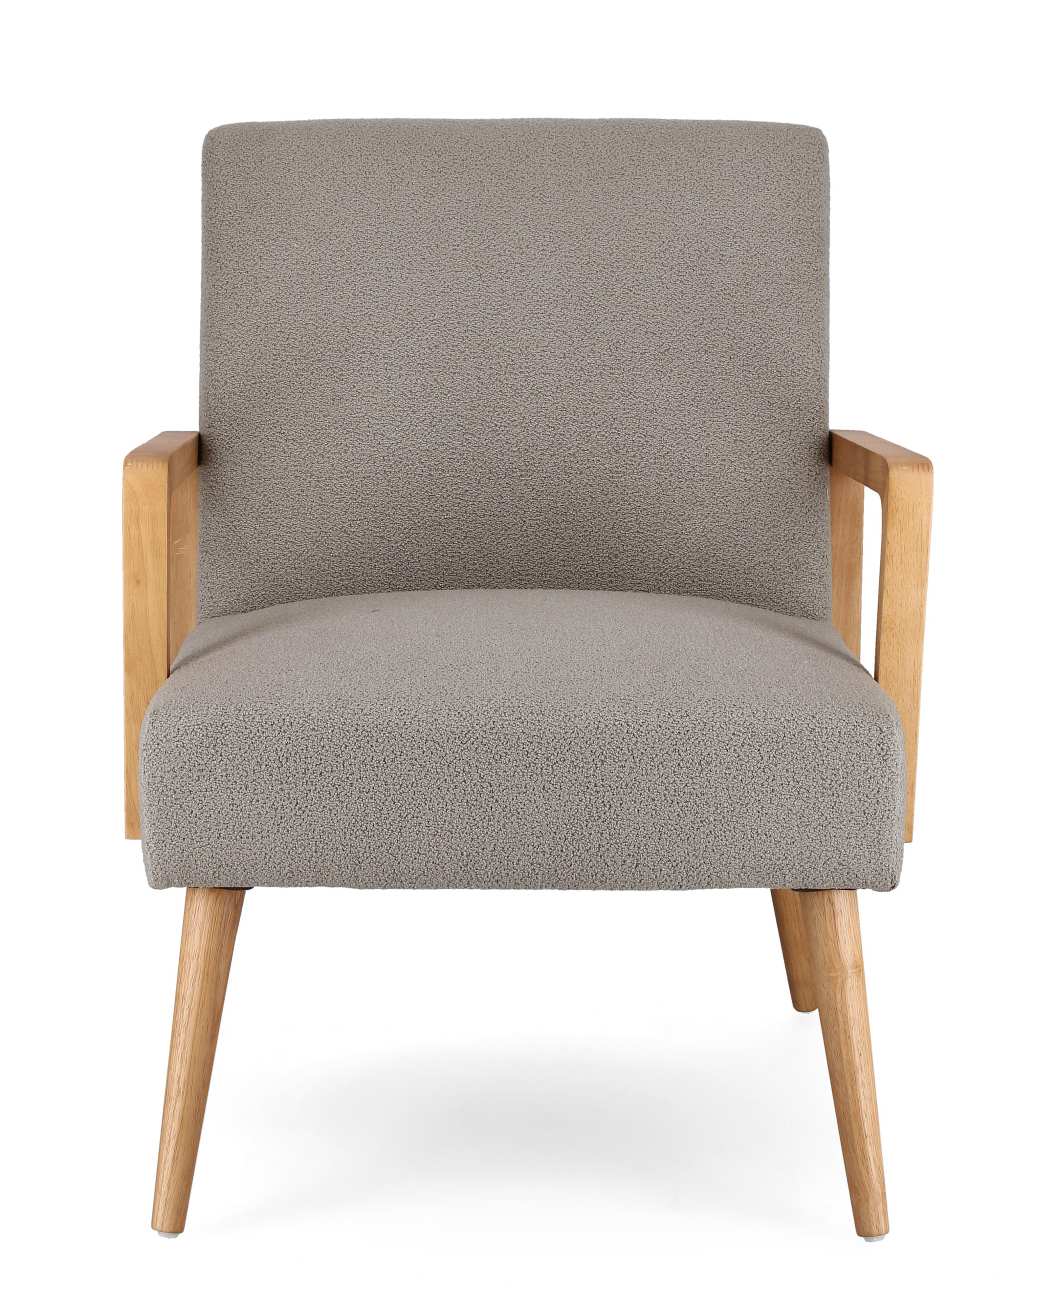 Der Sessel Verina überzeugt mit seinem modernen Stil. Gefertigt wurde er aus einem Stoff-Bezug, welcher einen grauen Farbton besitzt. Das Gestell ist aus Kautschukholz und hat eine natürliche Farbe. Der Sessel verfügt über eine Armlehne.